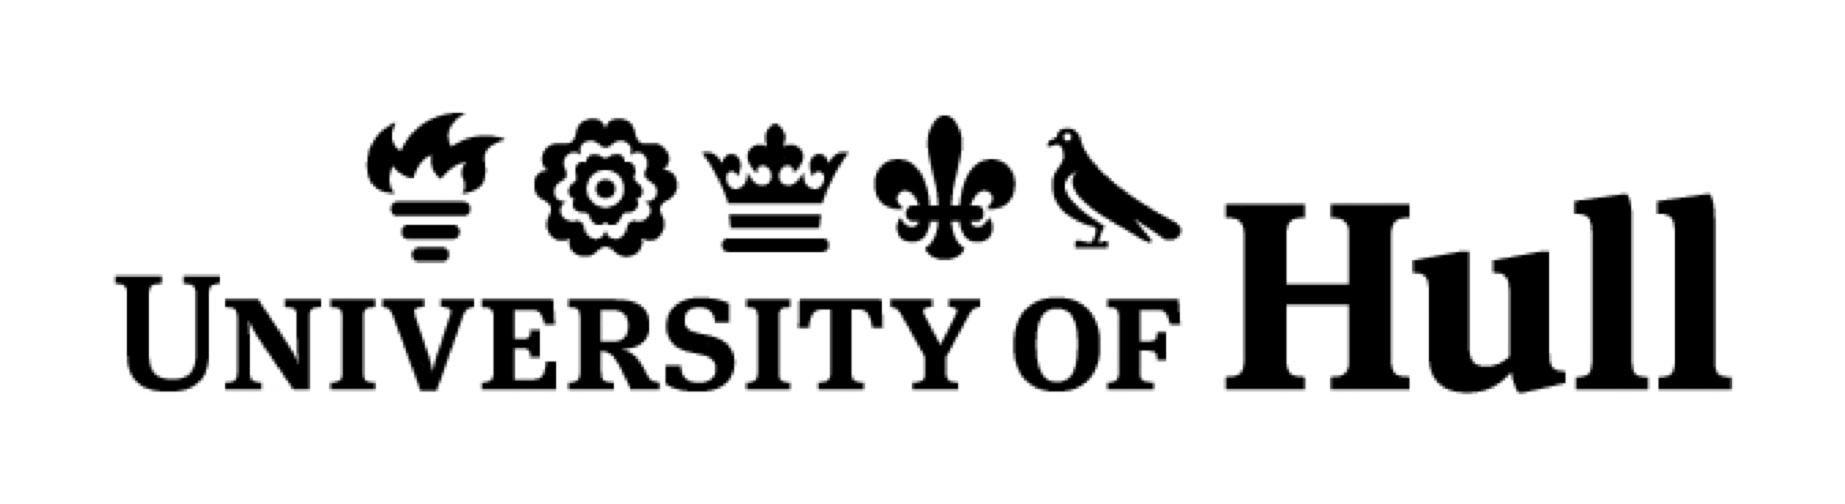 Hull Logo - University of Hull logo - SoapboxScienceSoapboxScience